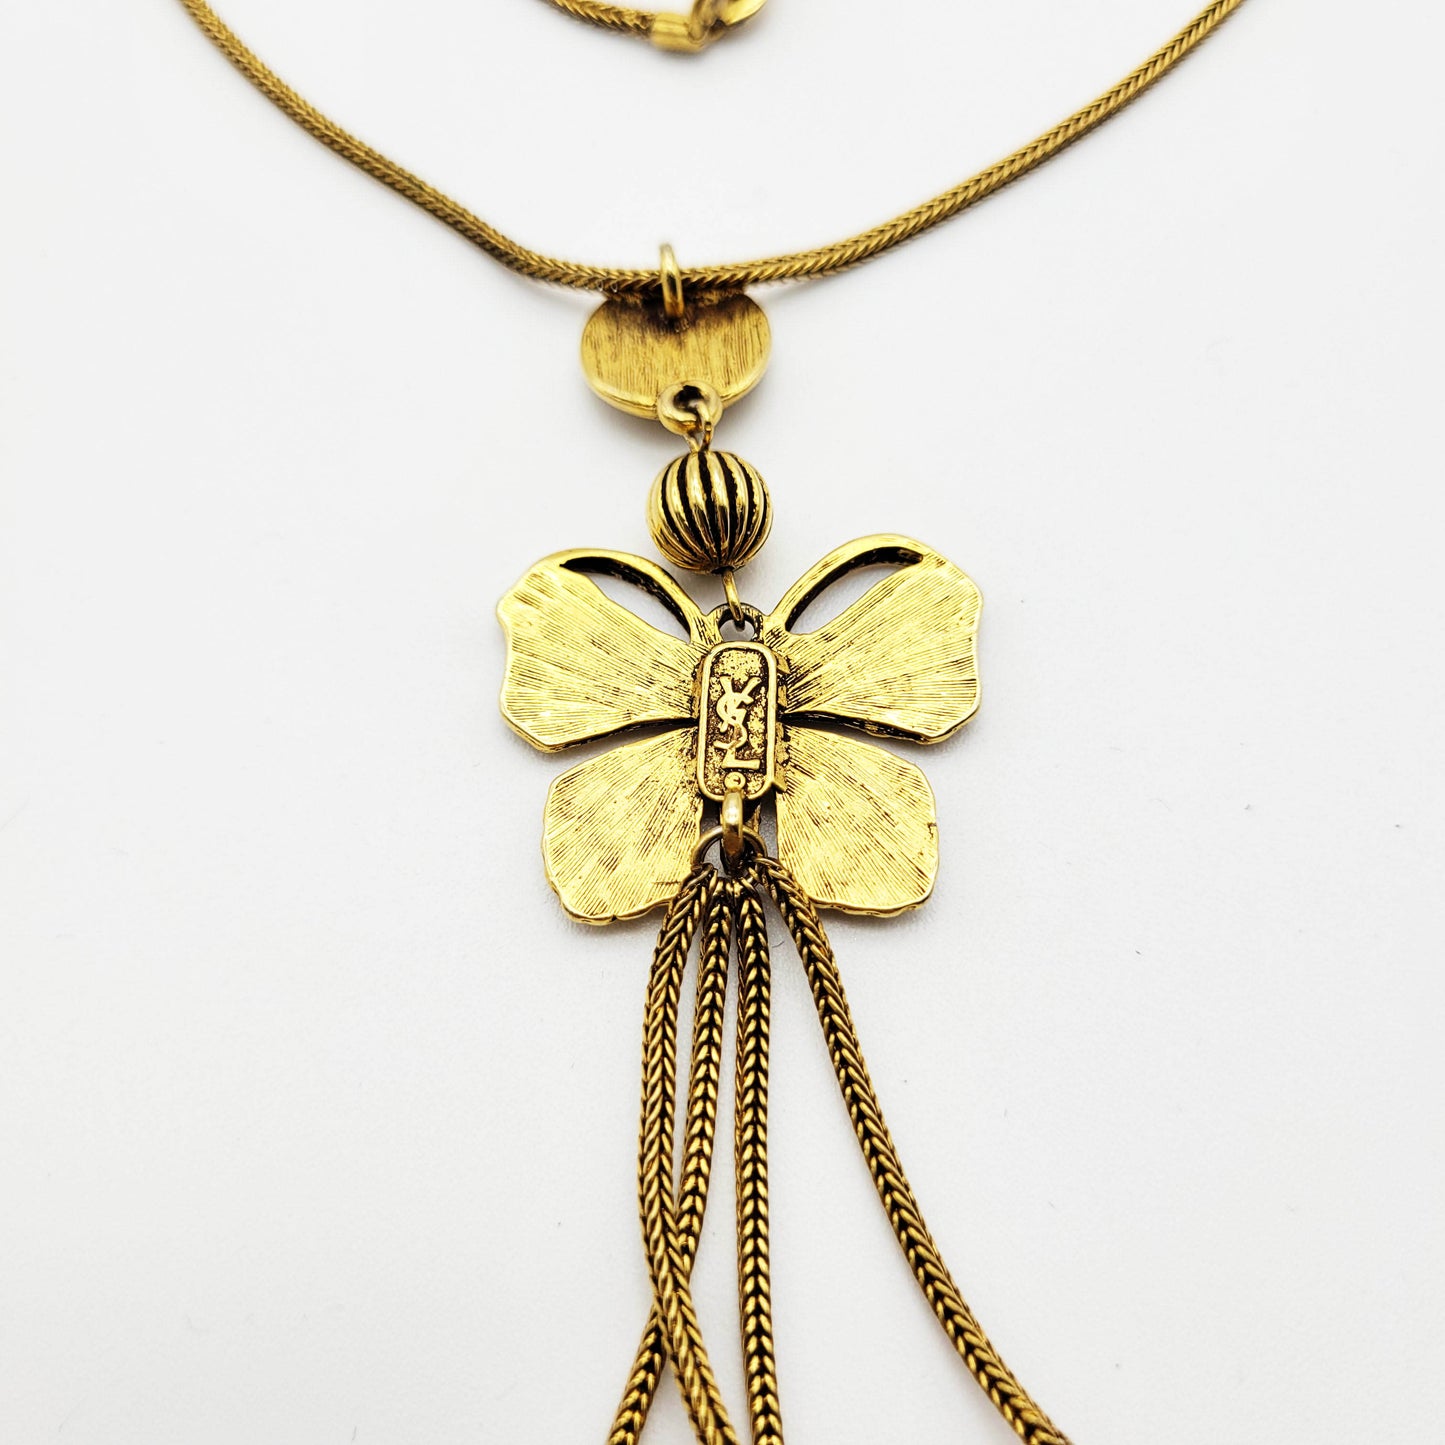 Vintage Yves Saint Laurent butterfly pendant necklace